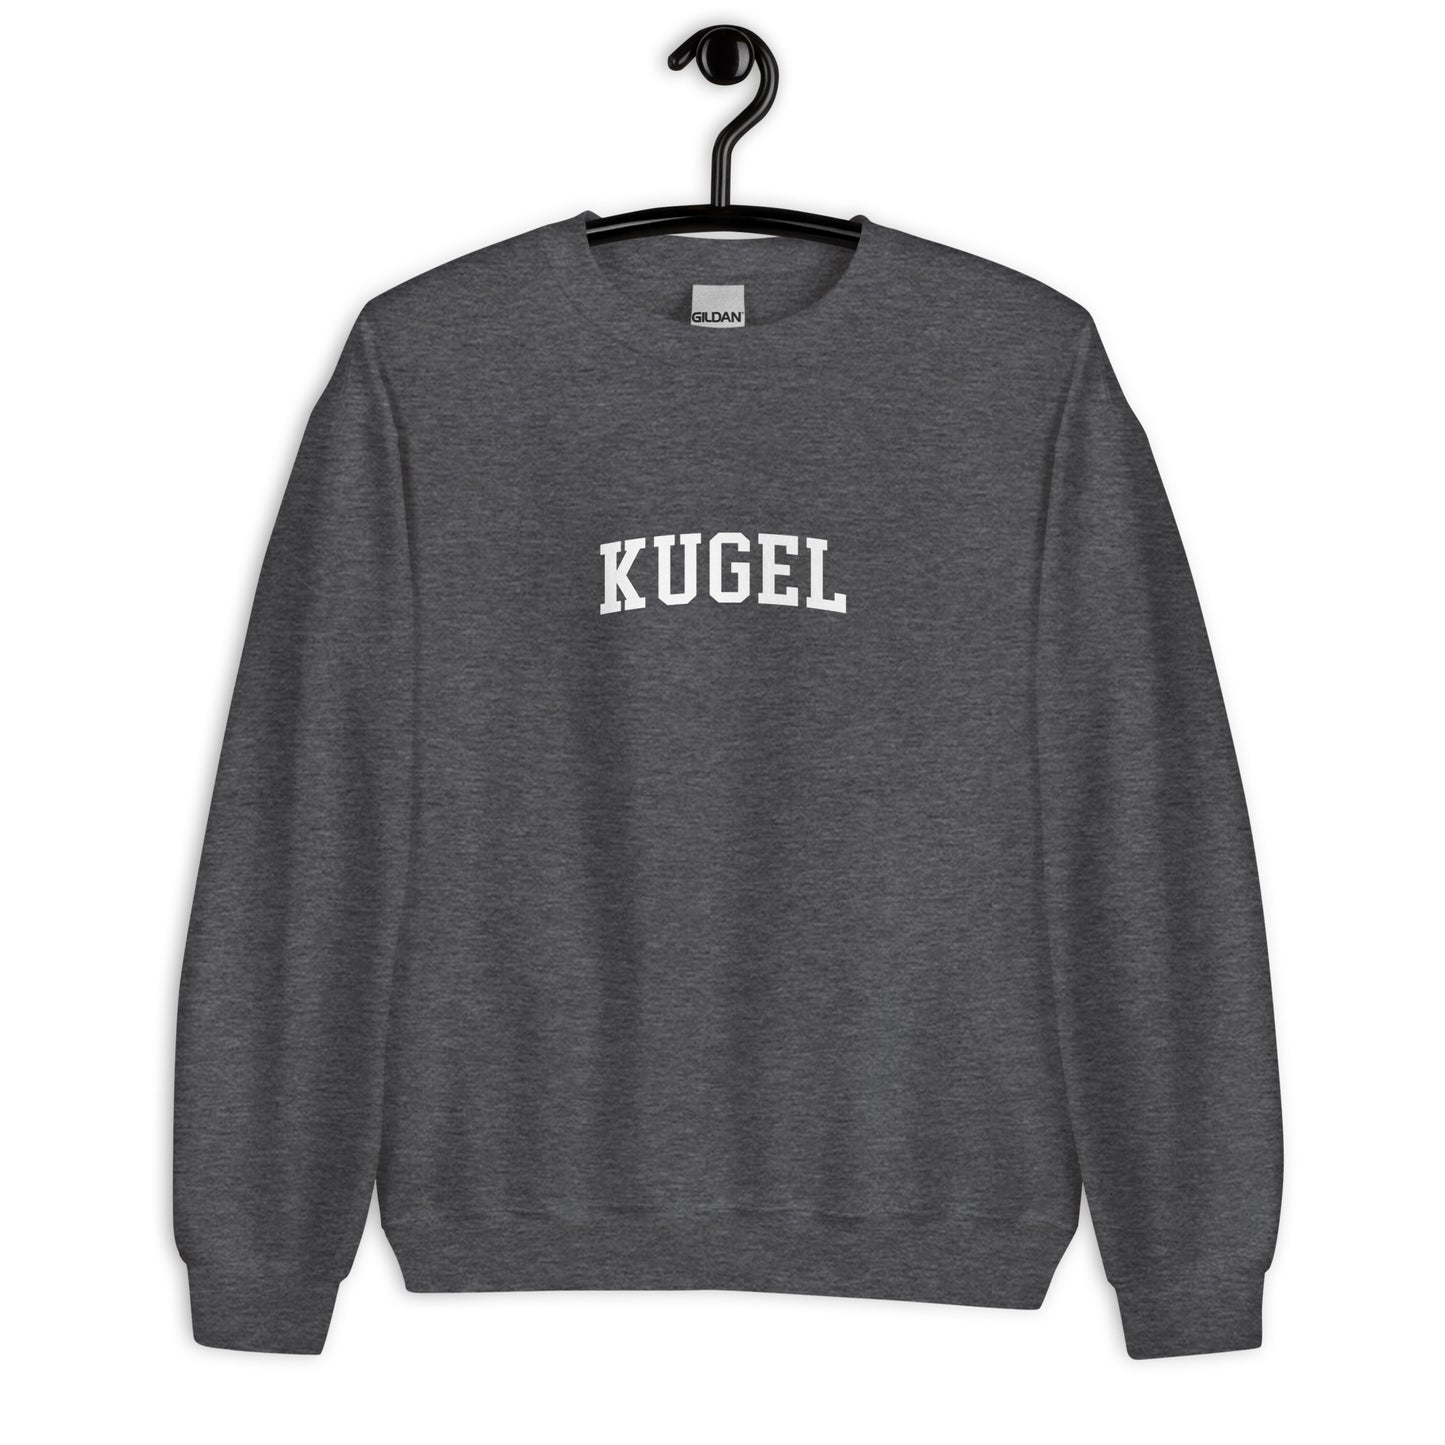 Kugel Sweatshirt - Arched Font